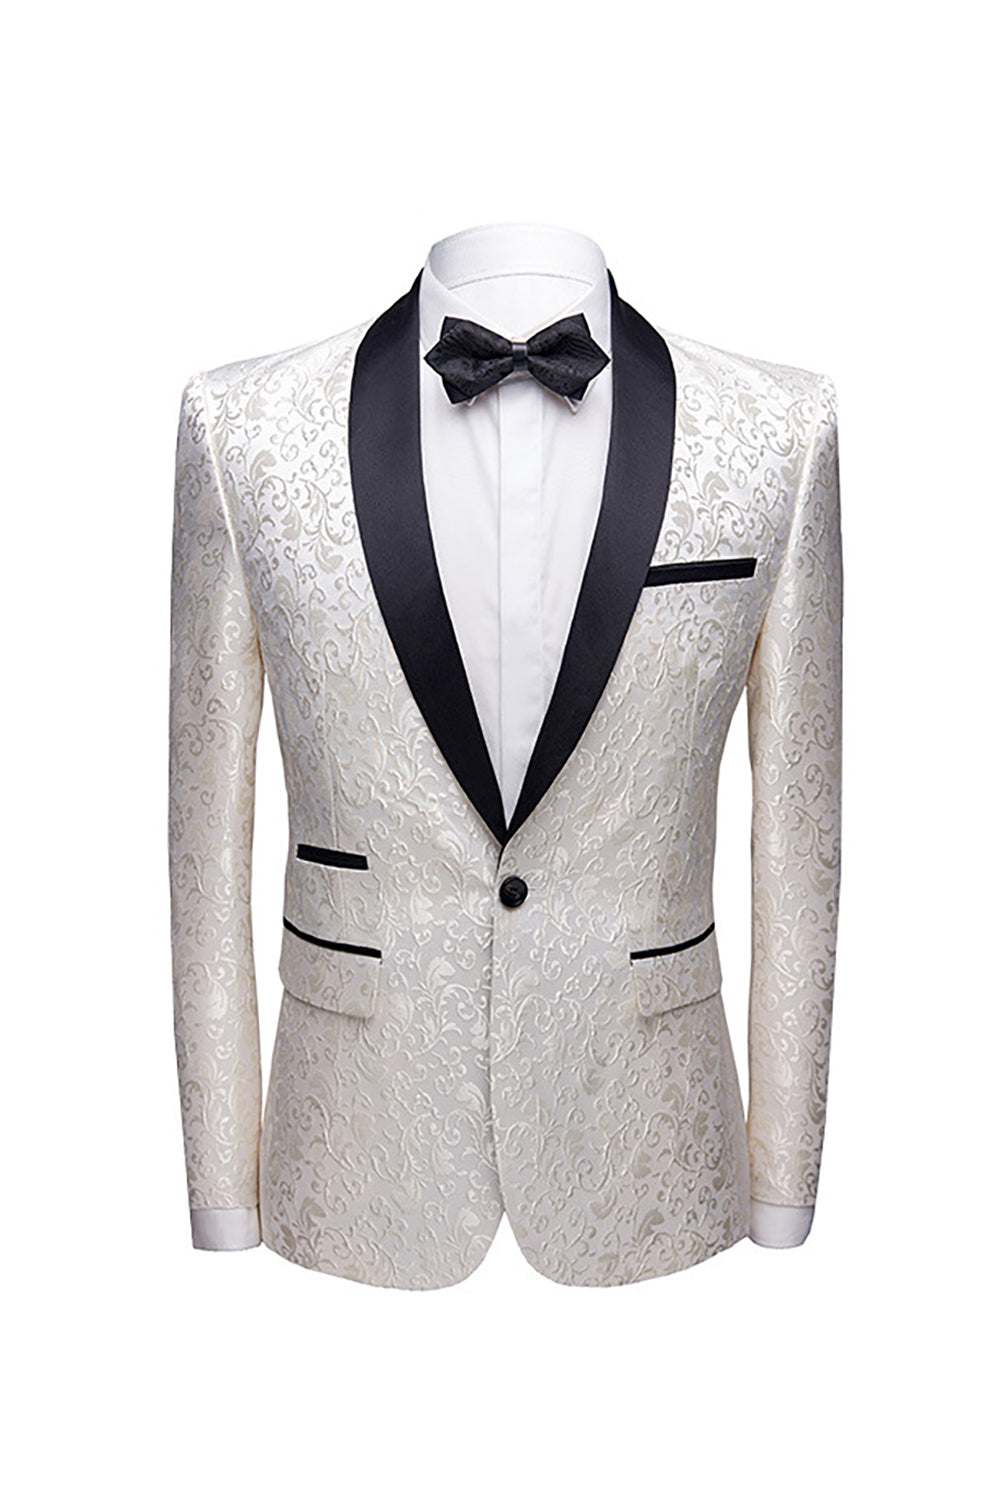 White Shawl Lapel Jacquard Prom Men's 2 Pieces Suits